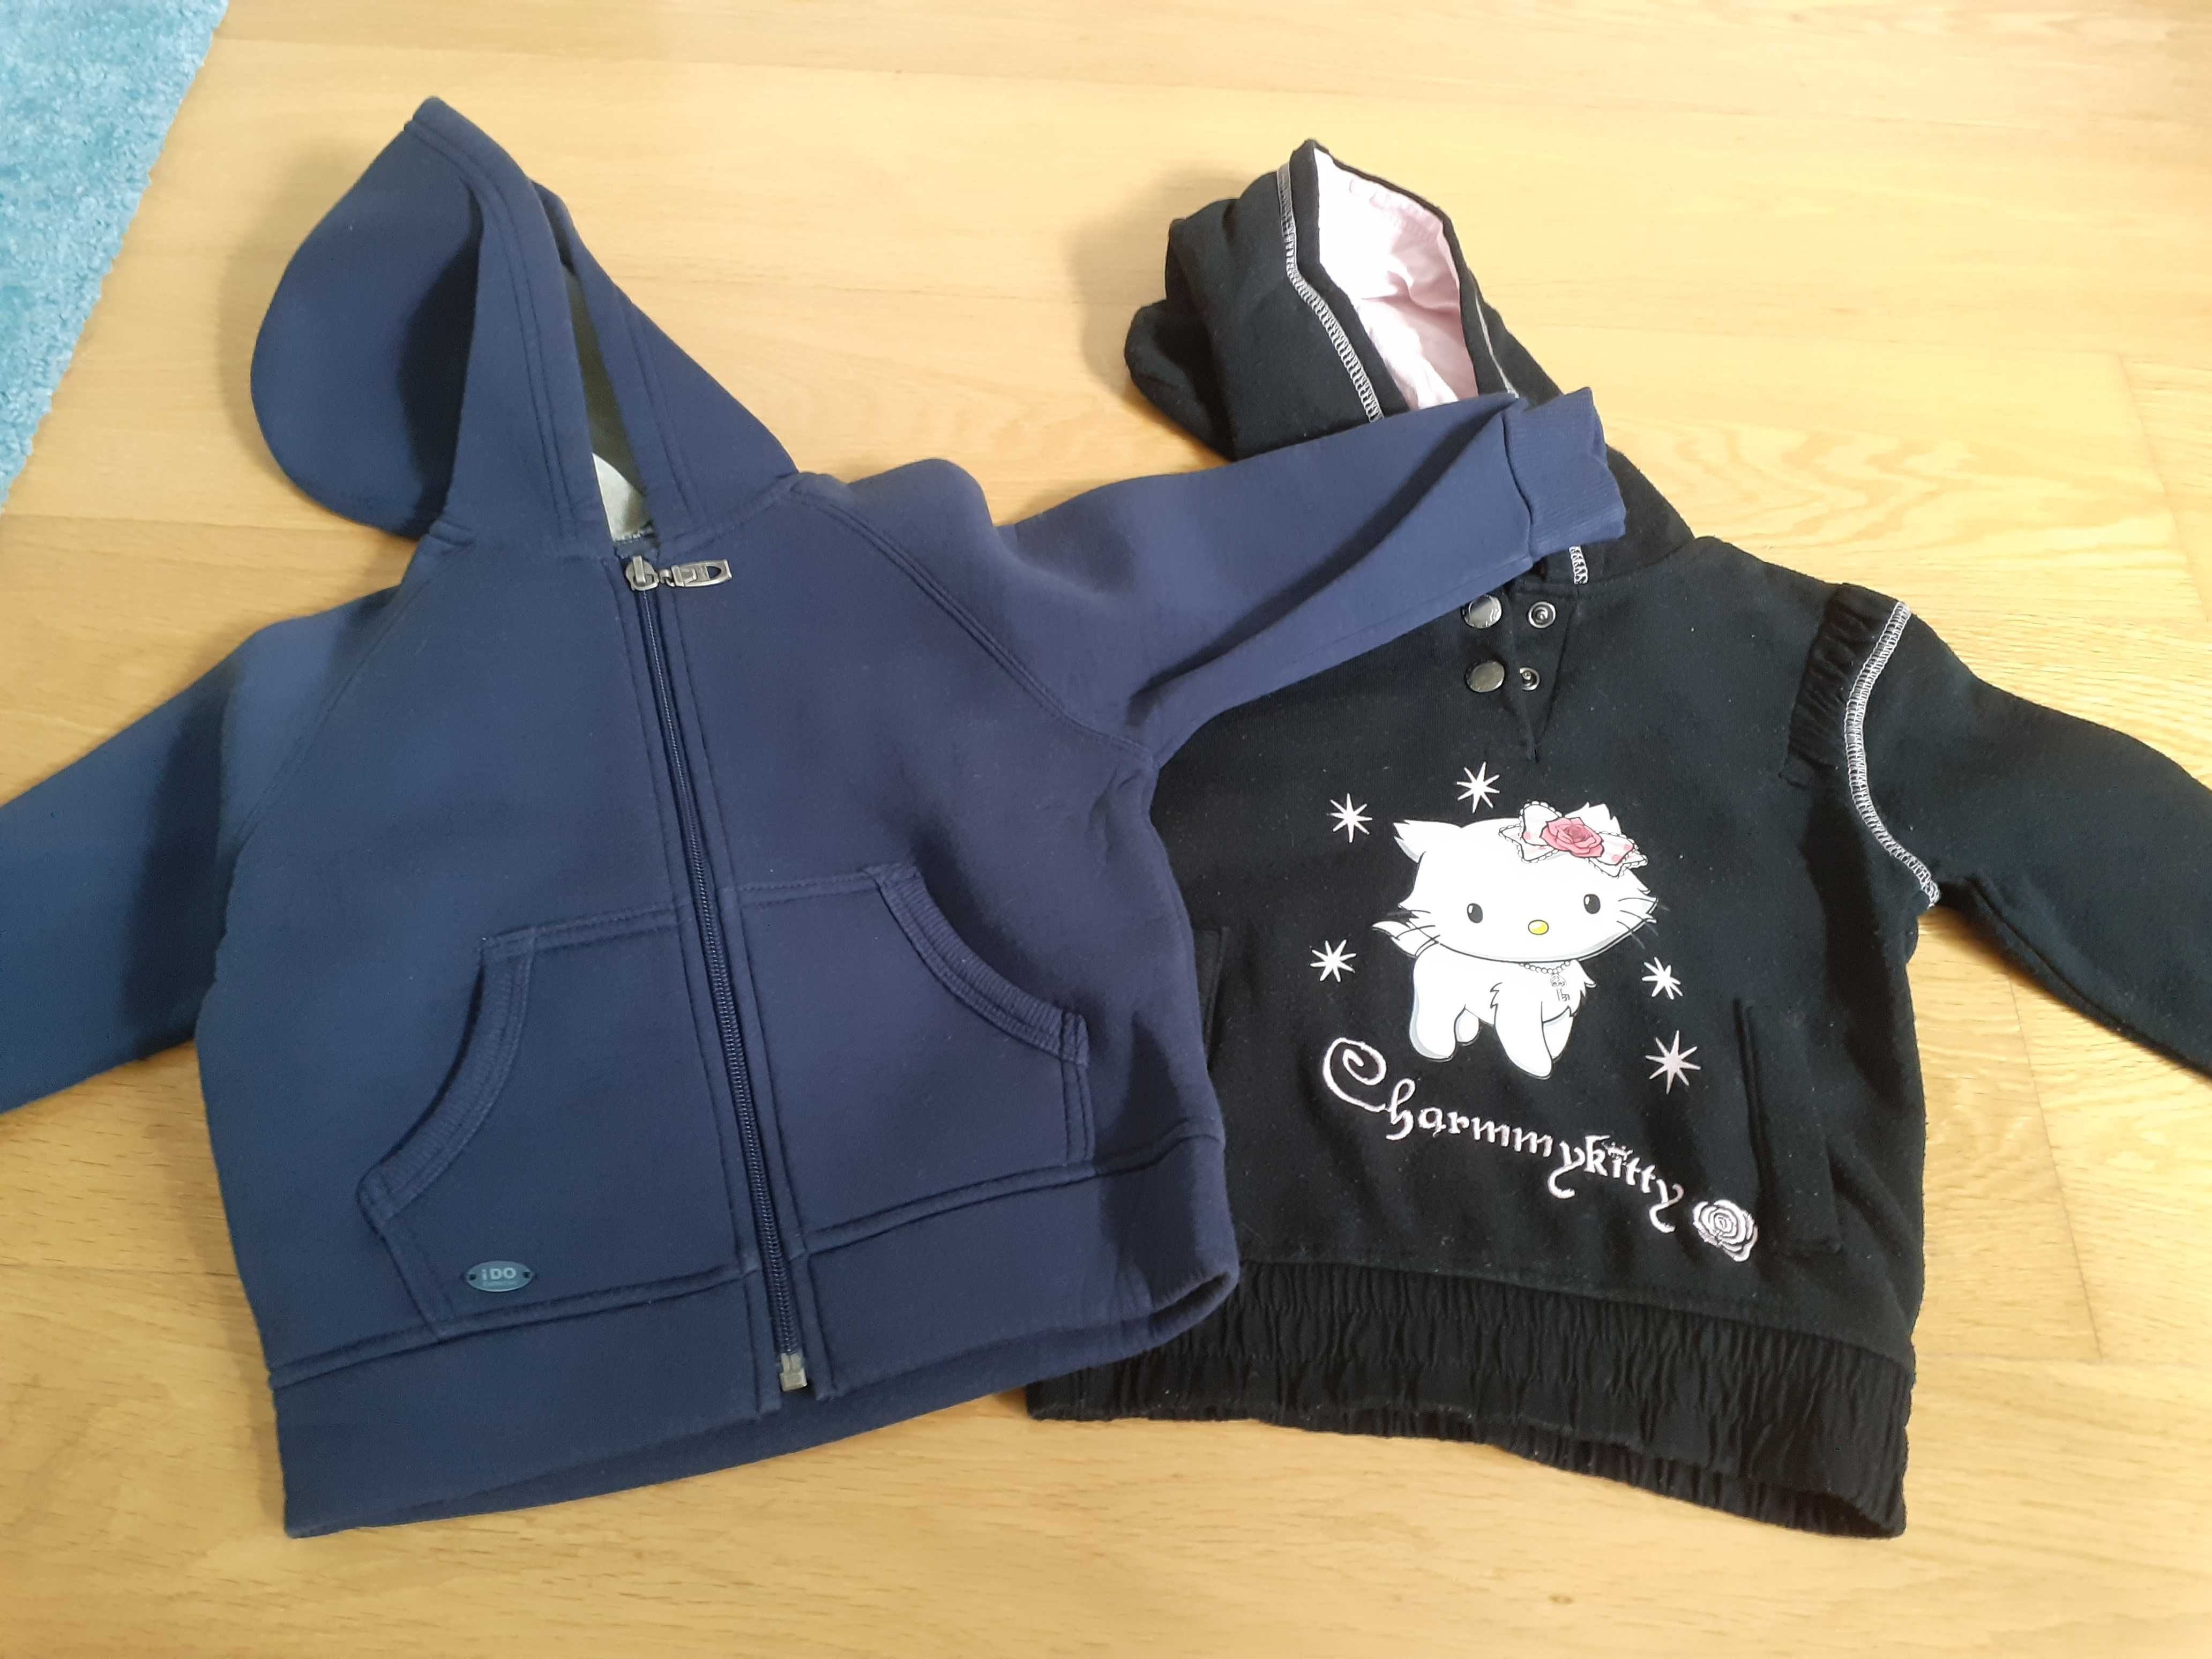 malha (casacos) e camisolas de criança -18 meses e 2/3 anos